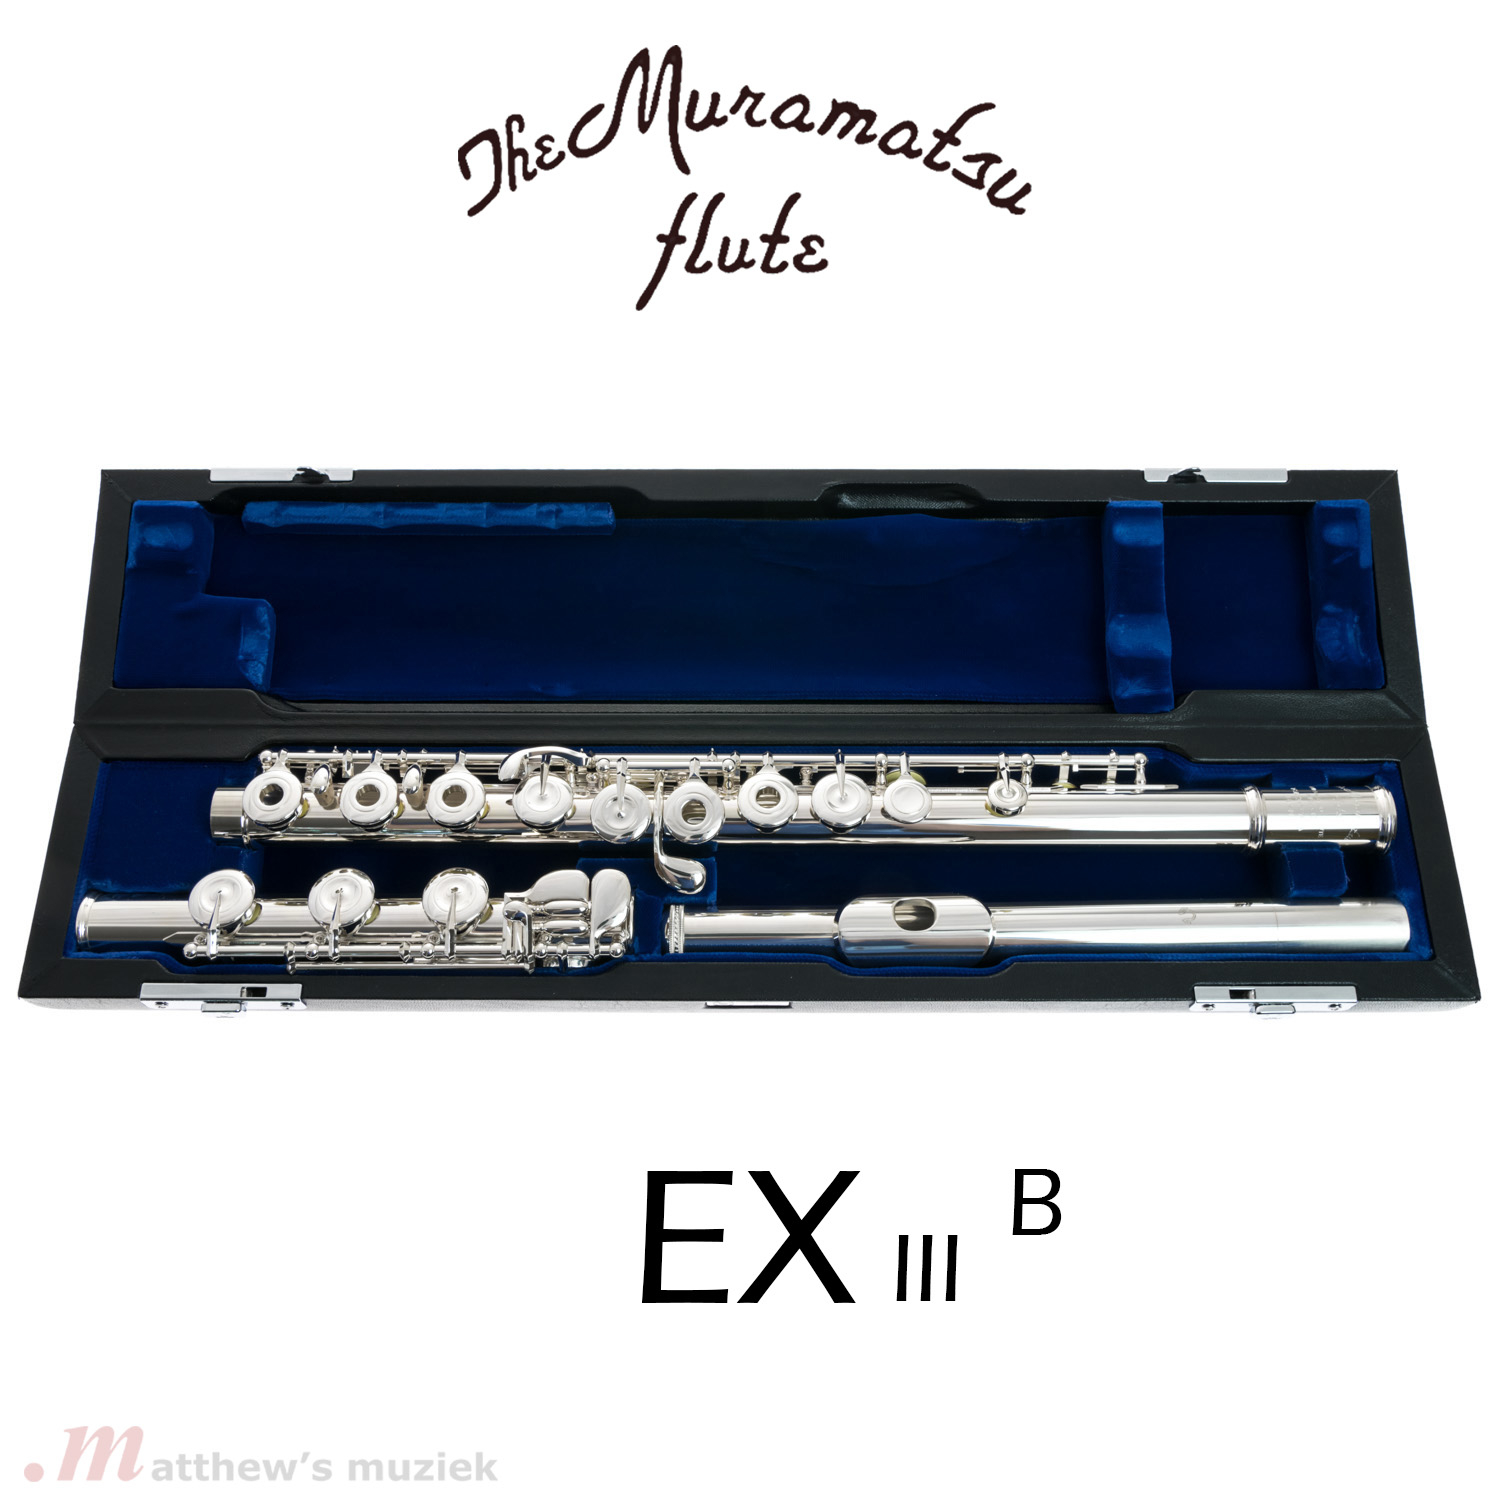 Muramatsu Flute - EX III B